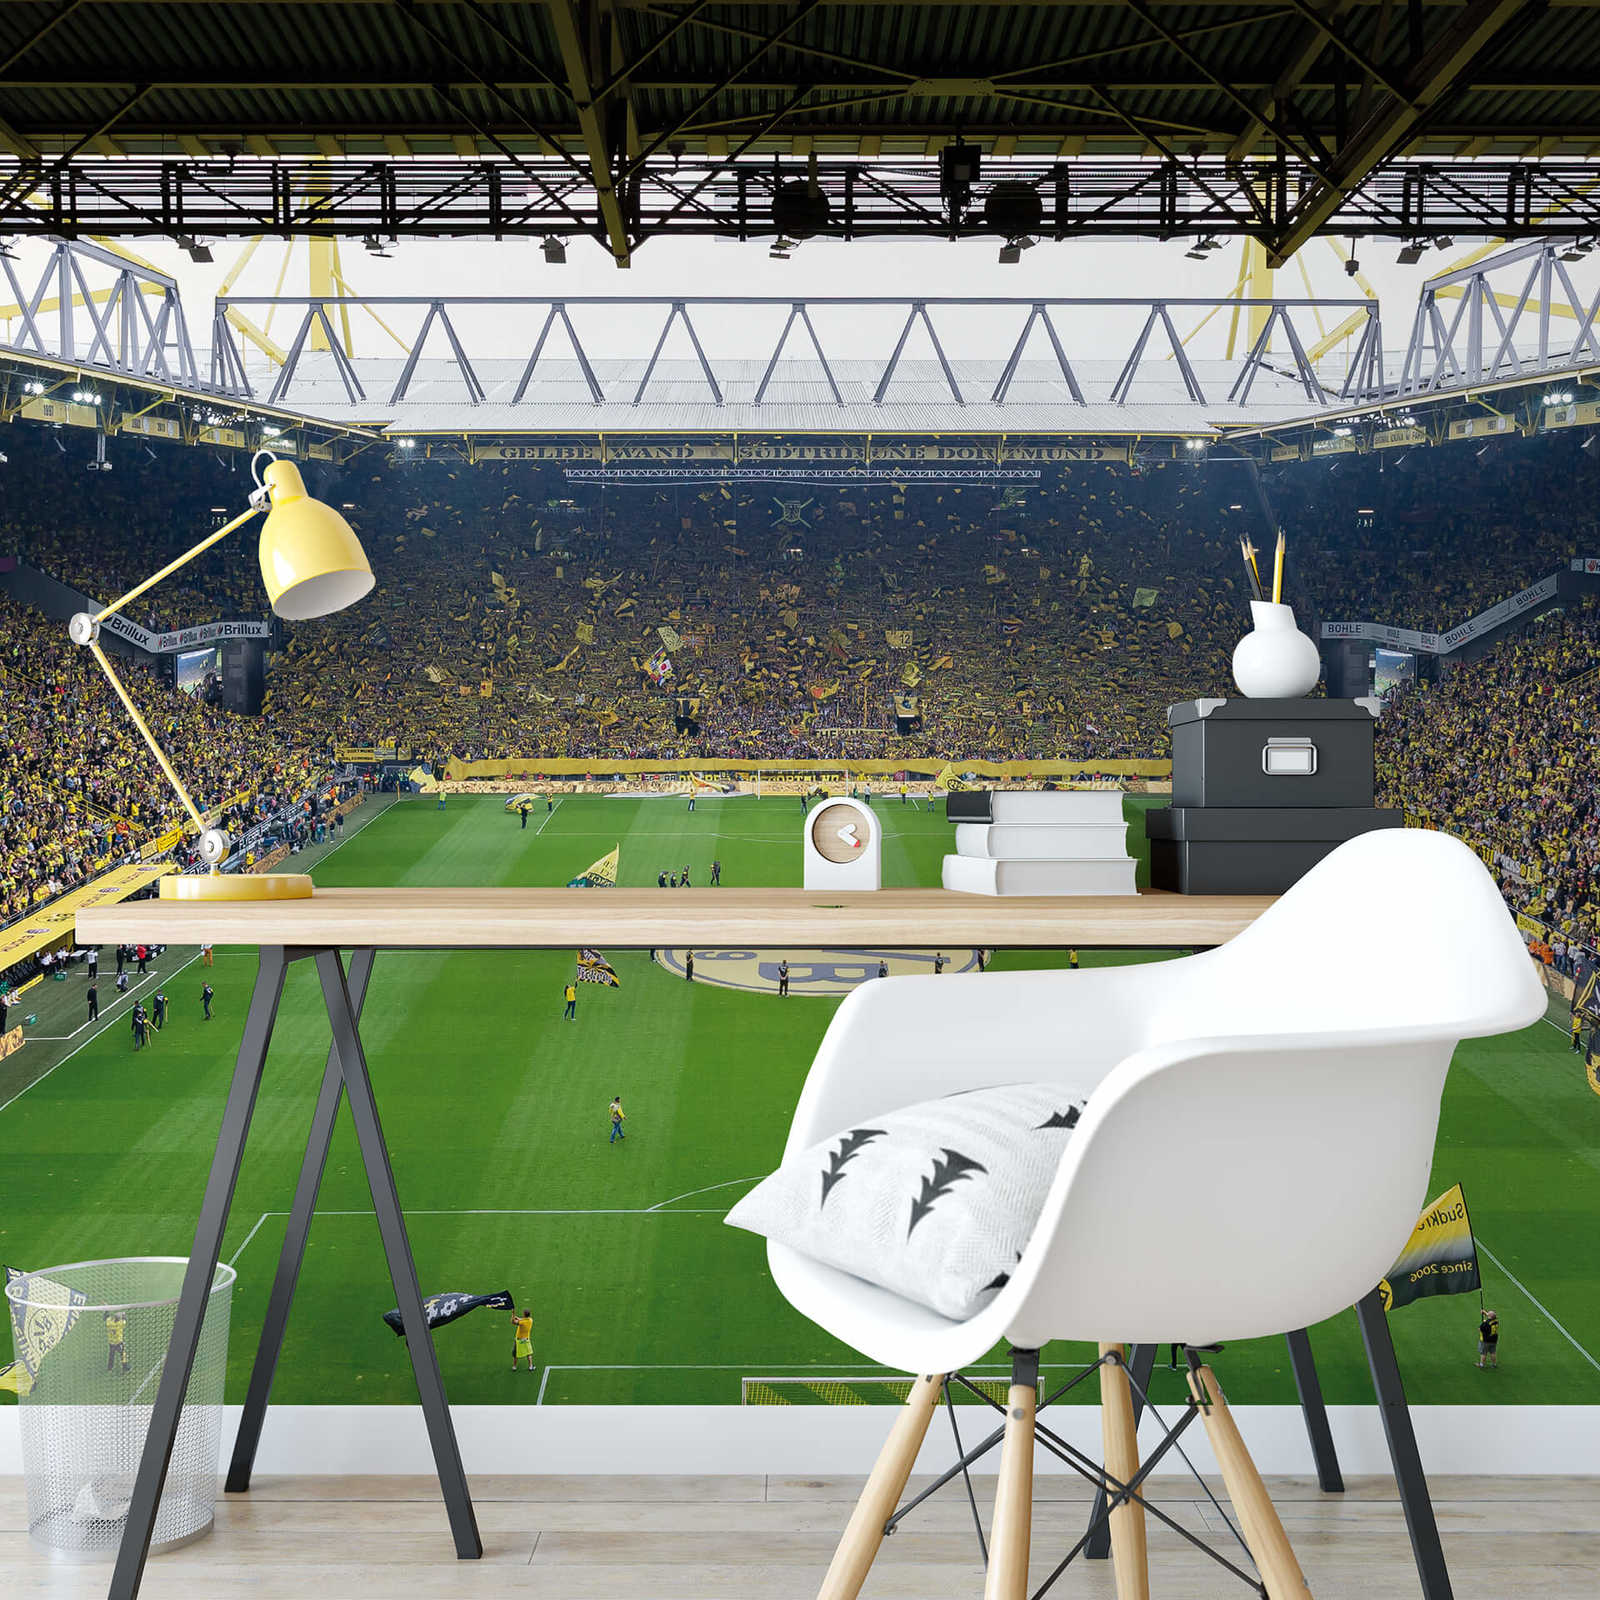             Muurschildering Borussia Dortmund stadion met koren
        